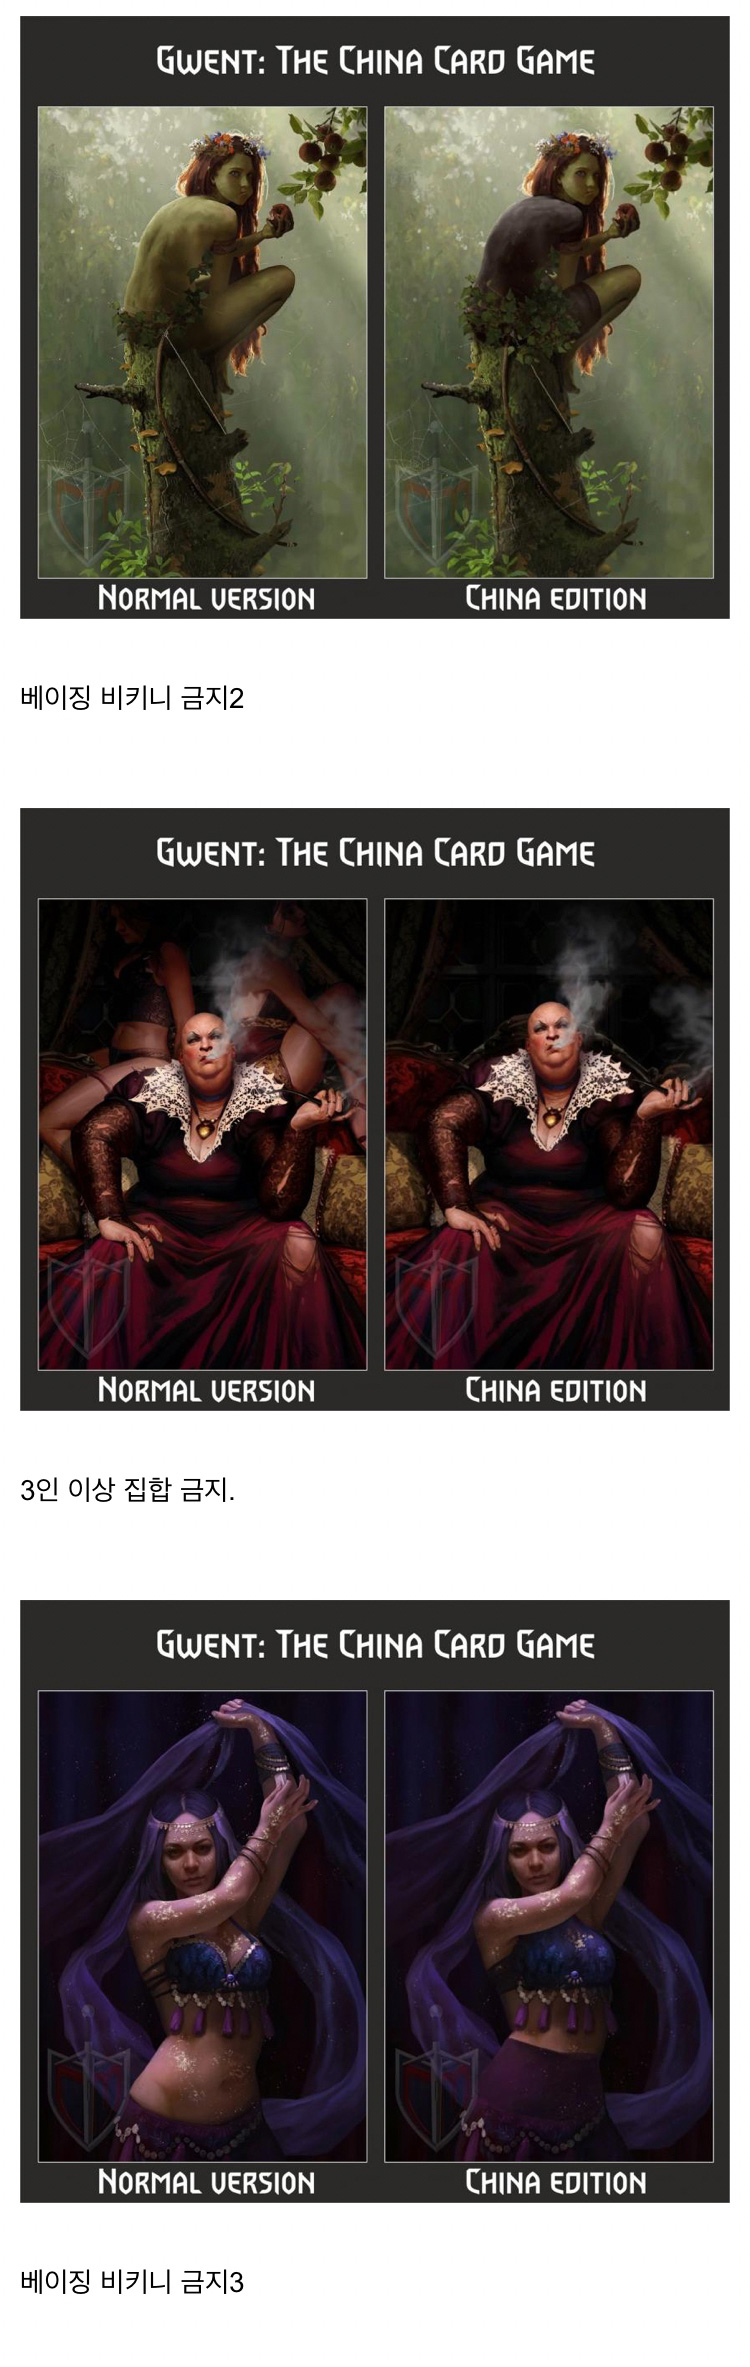 중국 공산당 검열 앞에 공손해진 카드 게임 - 짤티비